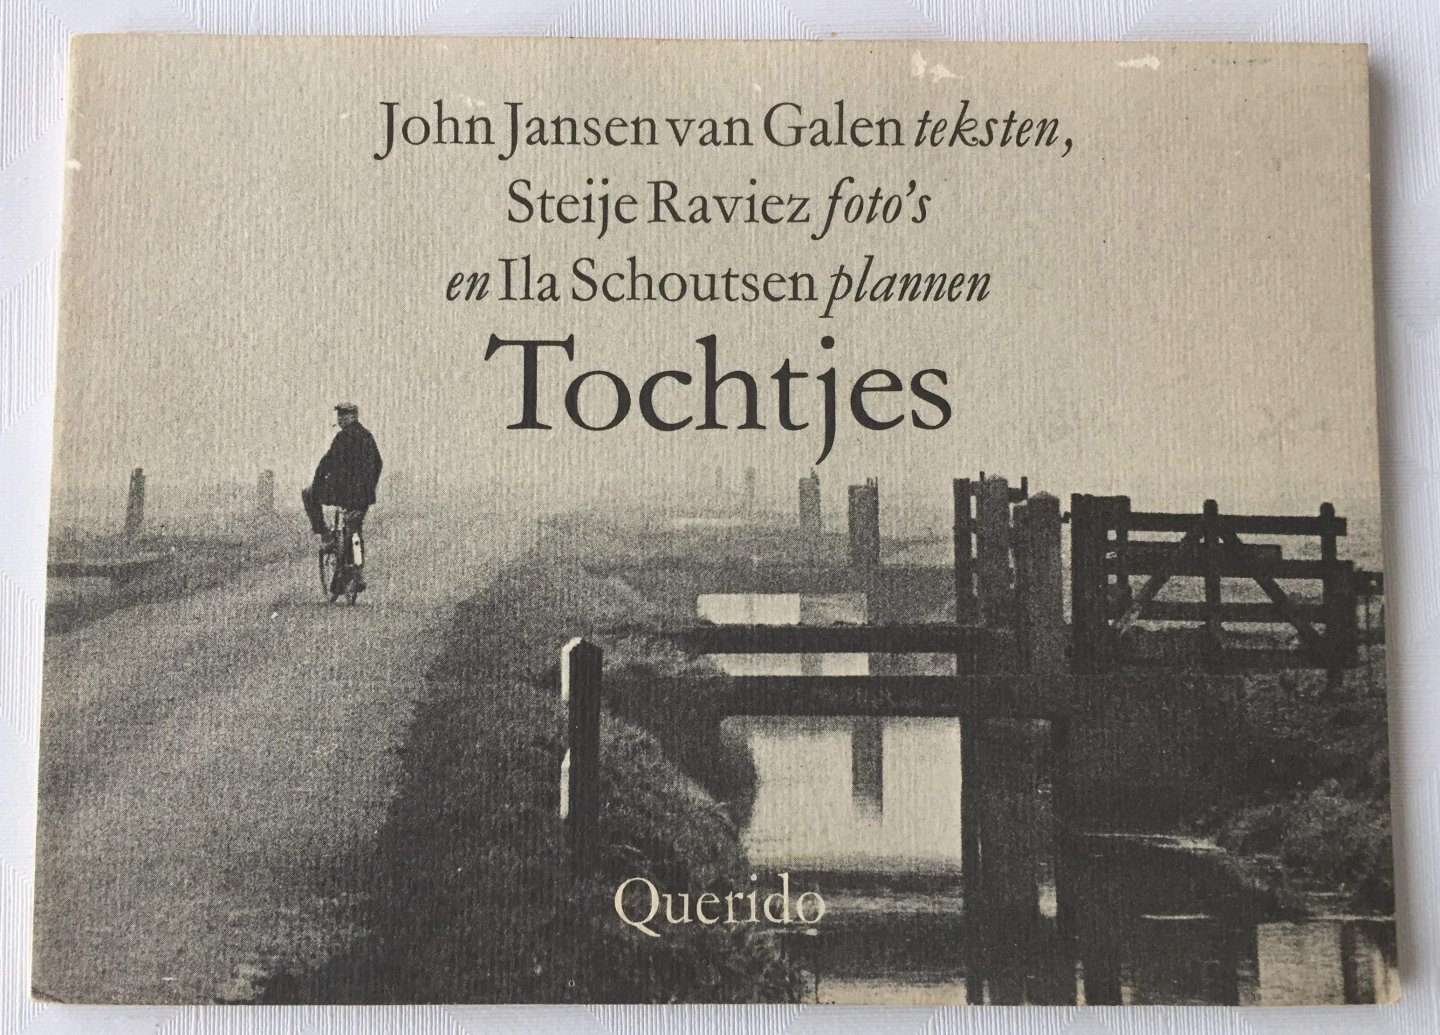 Jansen van Galen, John, tekst, Steije Raviez, foto's, Ila Schoutsen, plannen, - Tochtjes